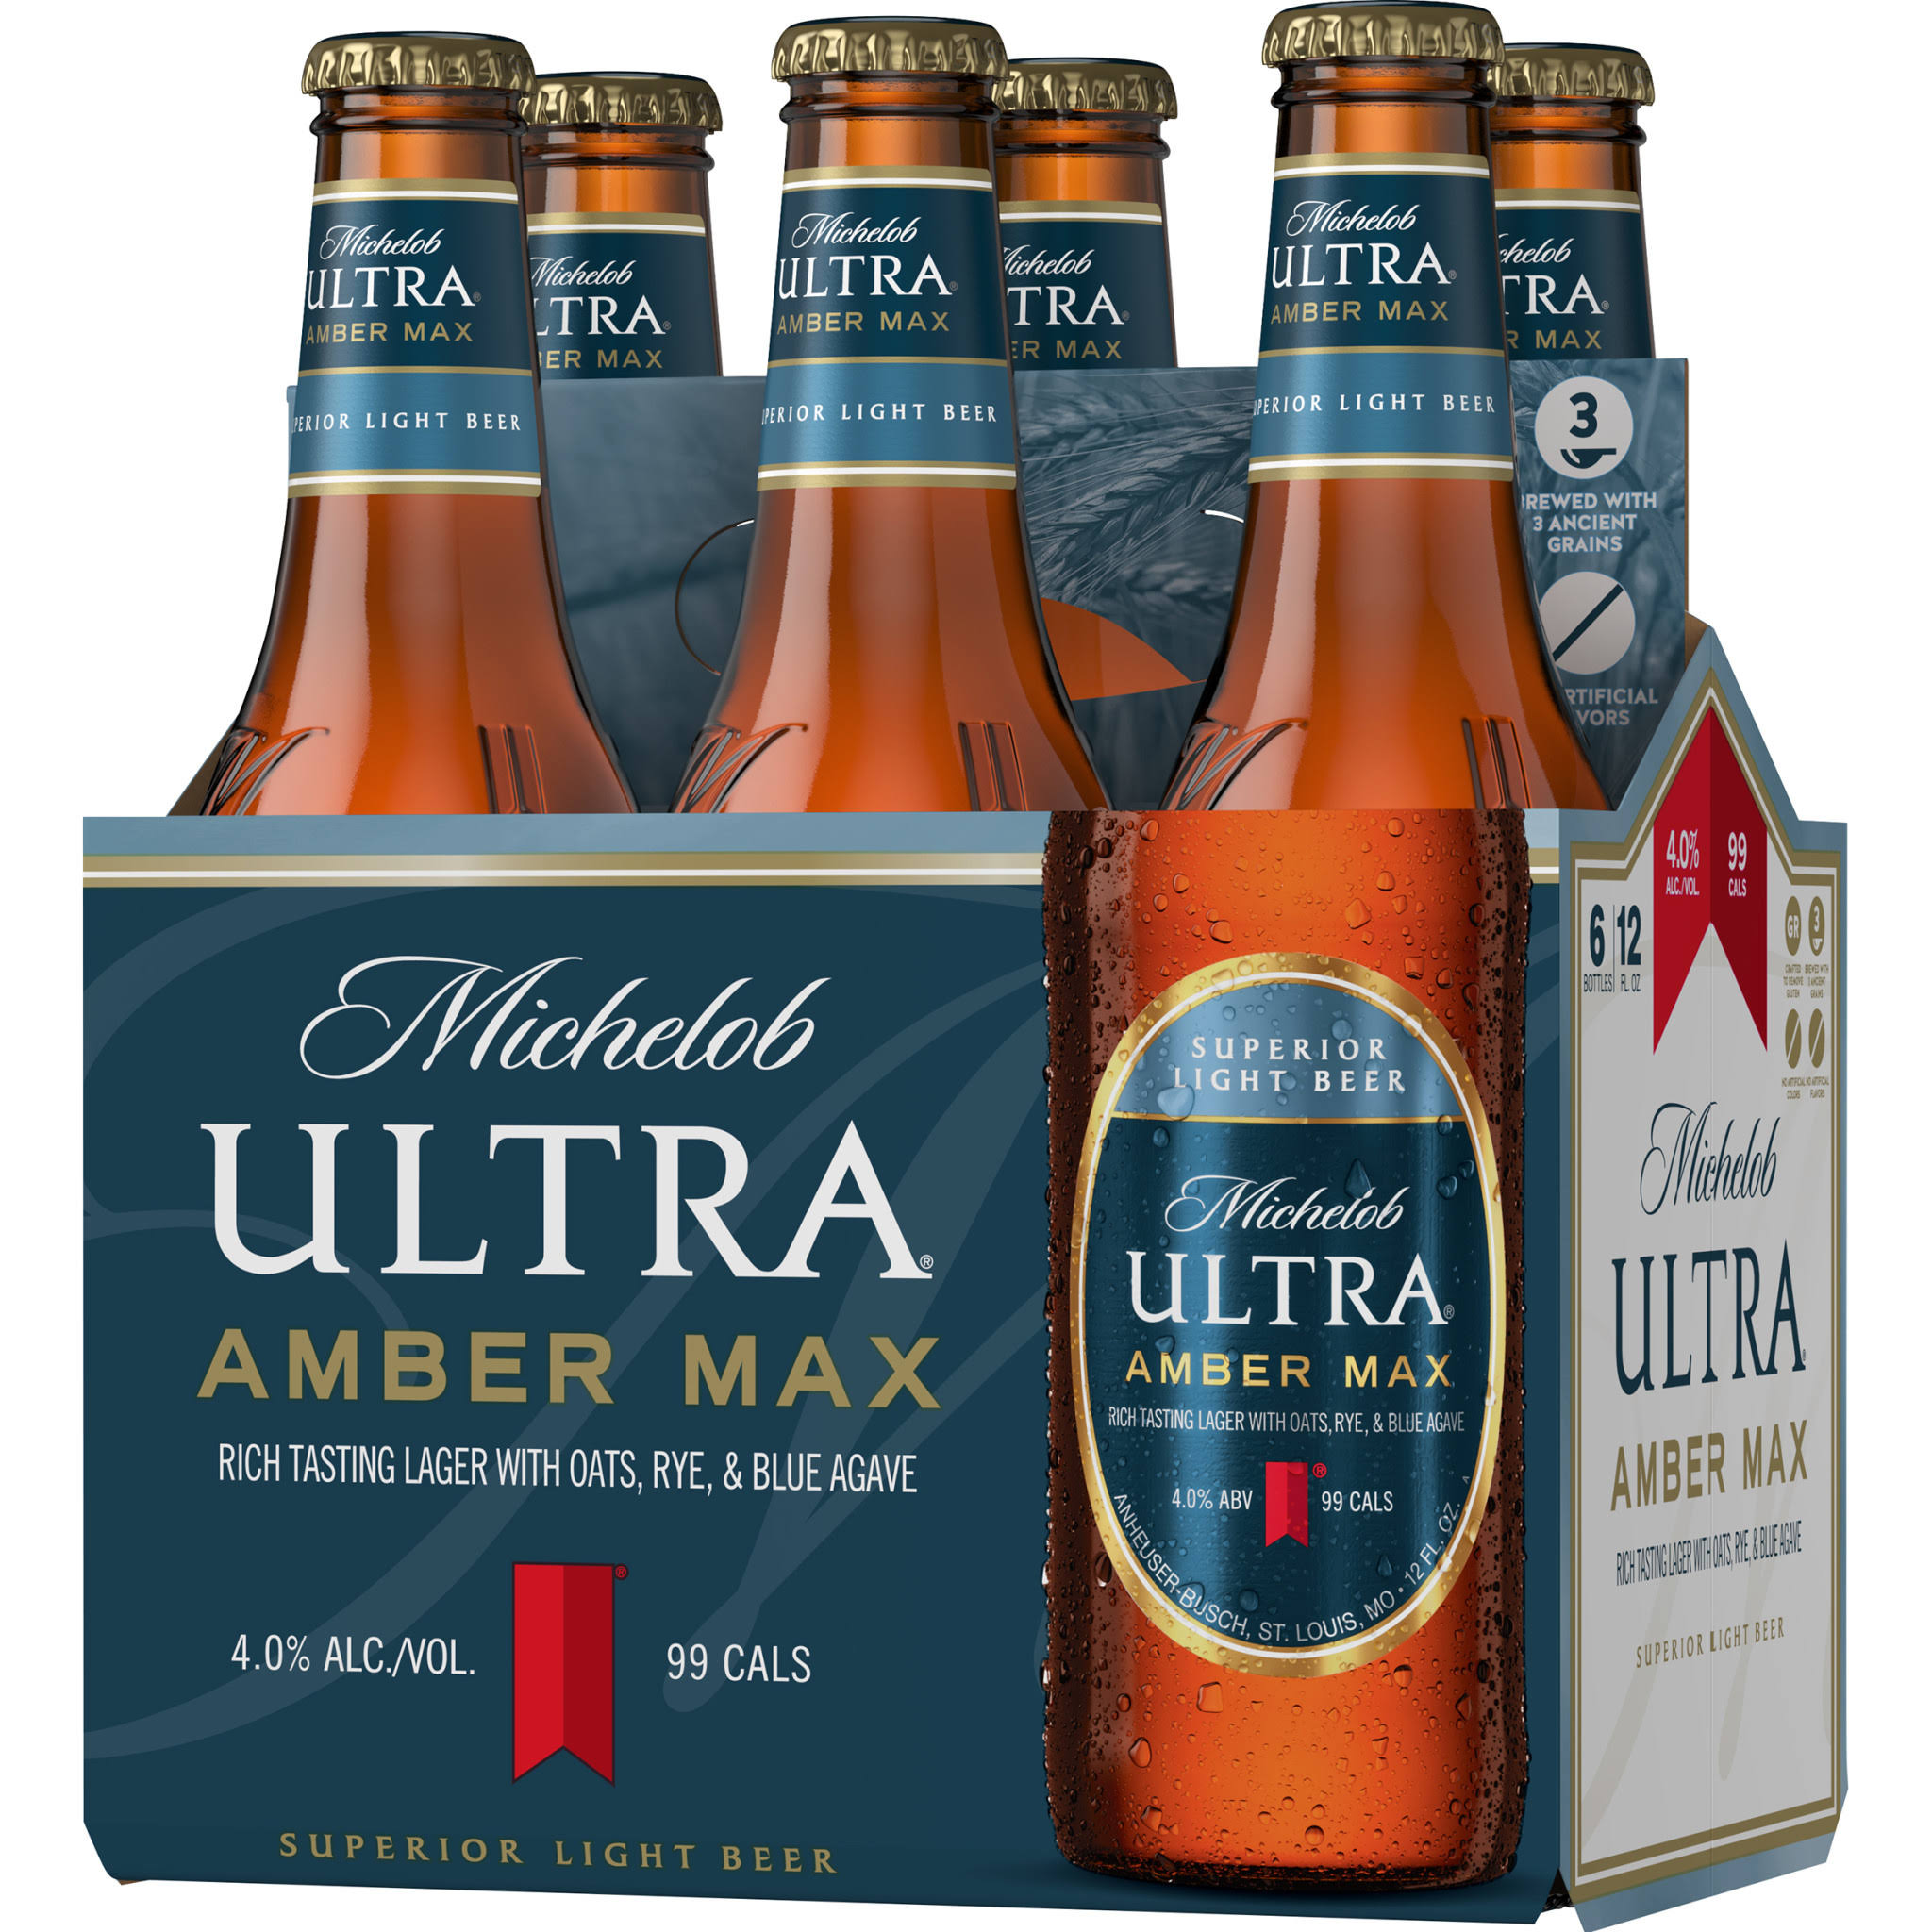 Michelob Ultra Beer, Amber Max, Superior Light Beer - 6 pack, 12 fl oz bottles